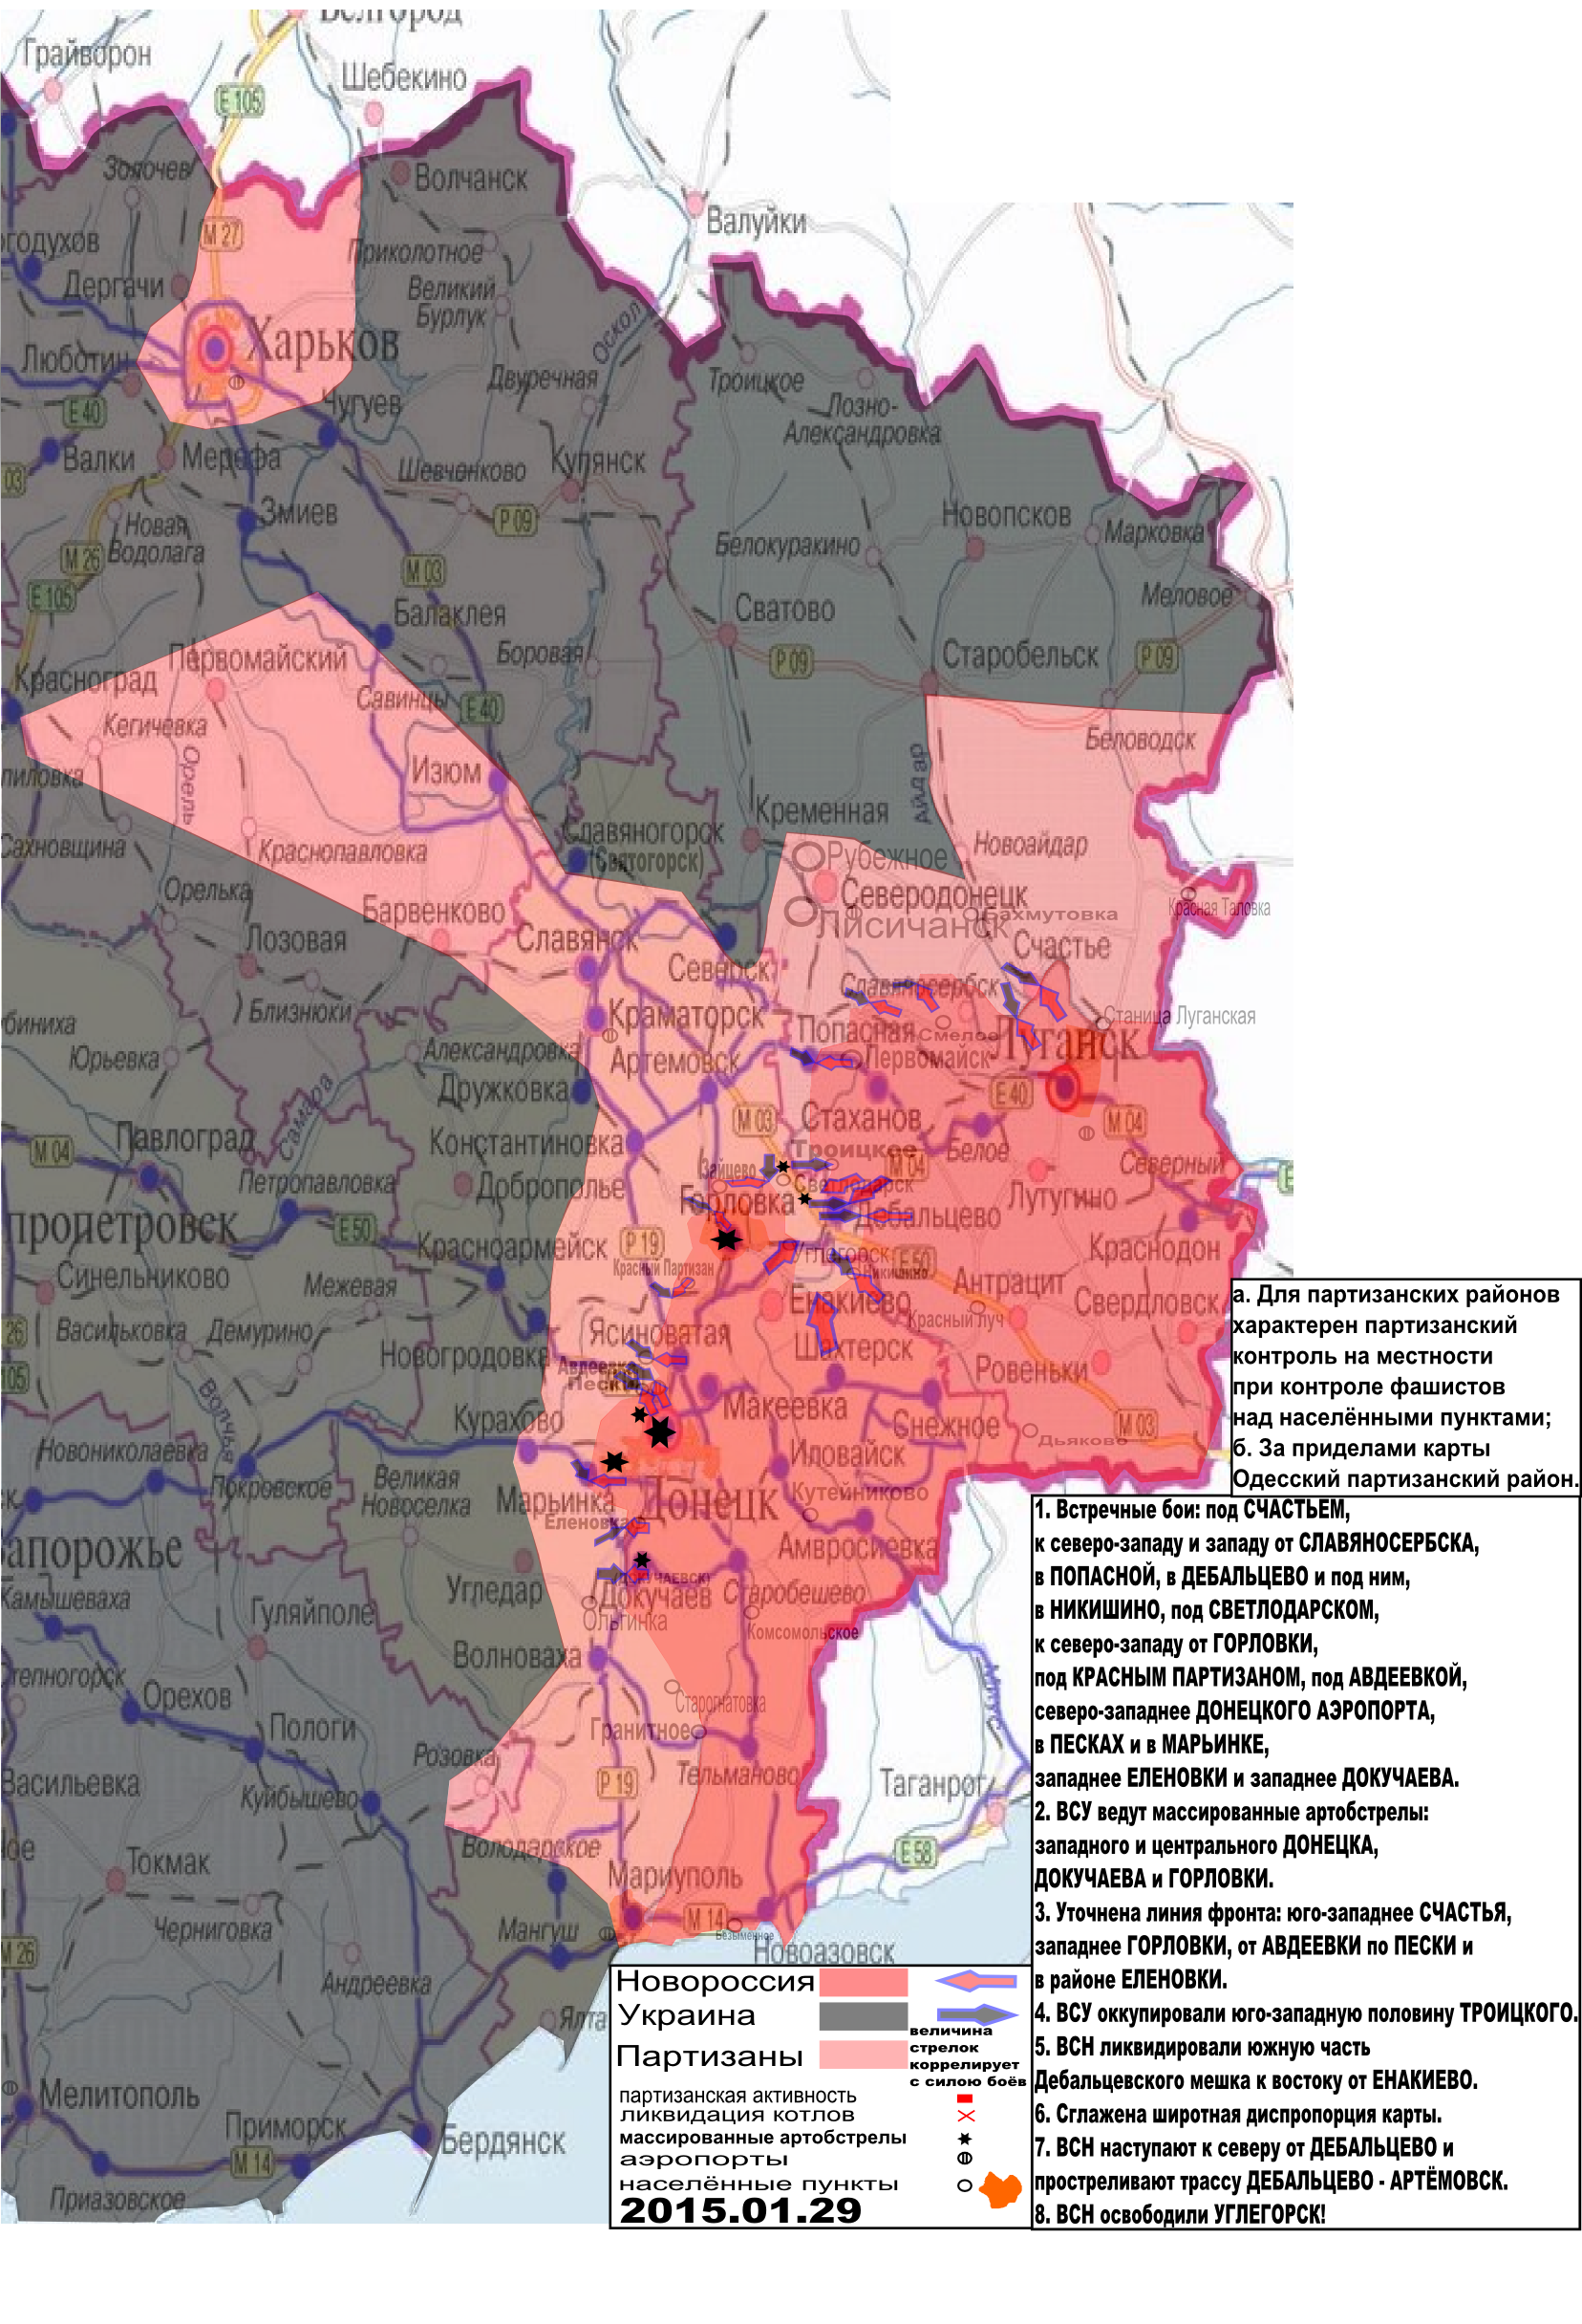 Карта боевых действий в Новороссии с обозначением зон партизанской активности за 29 января